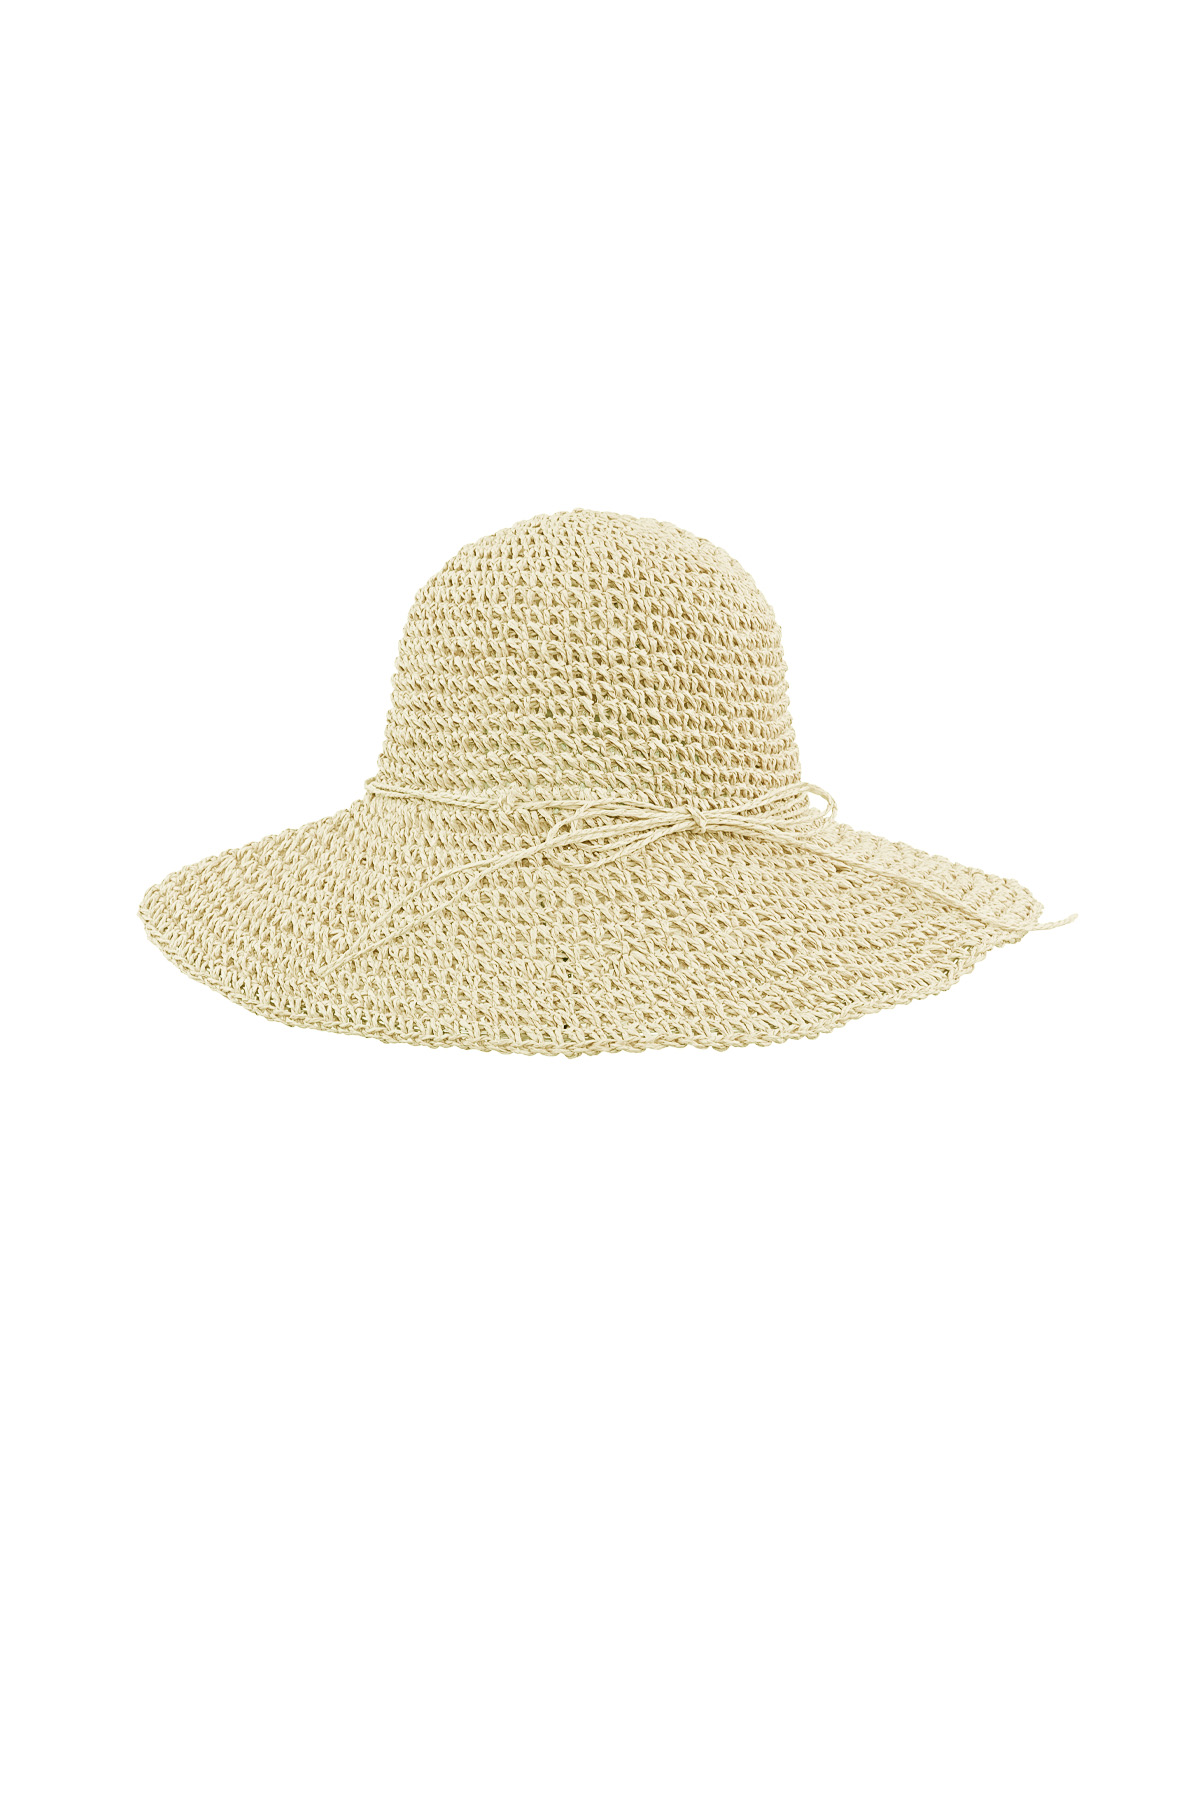 Crochet hoed met strik - beige h5 